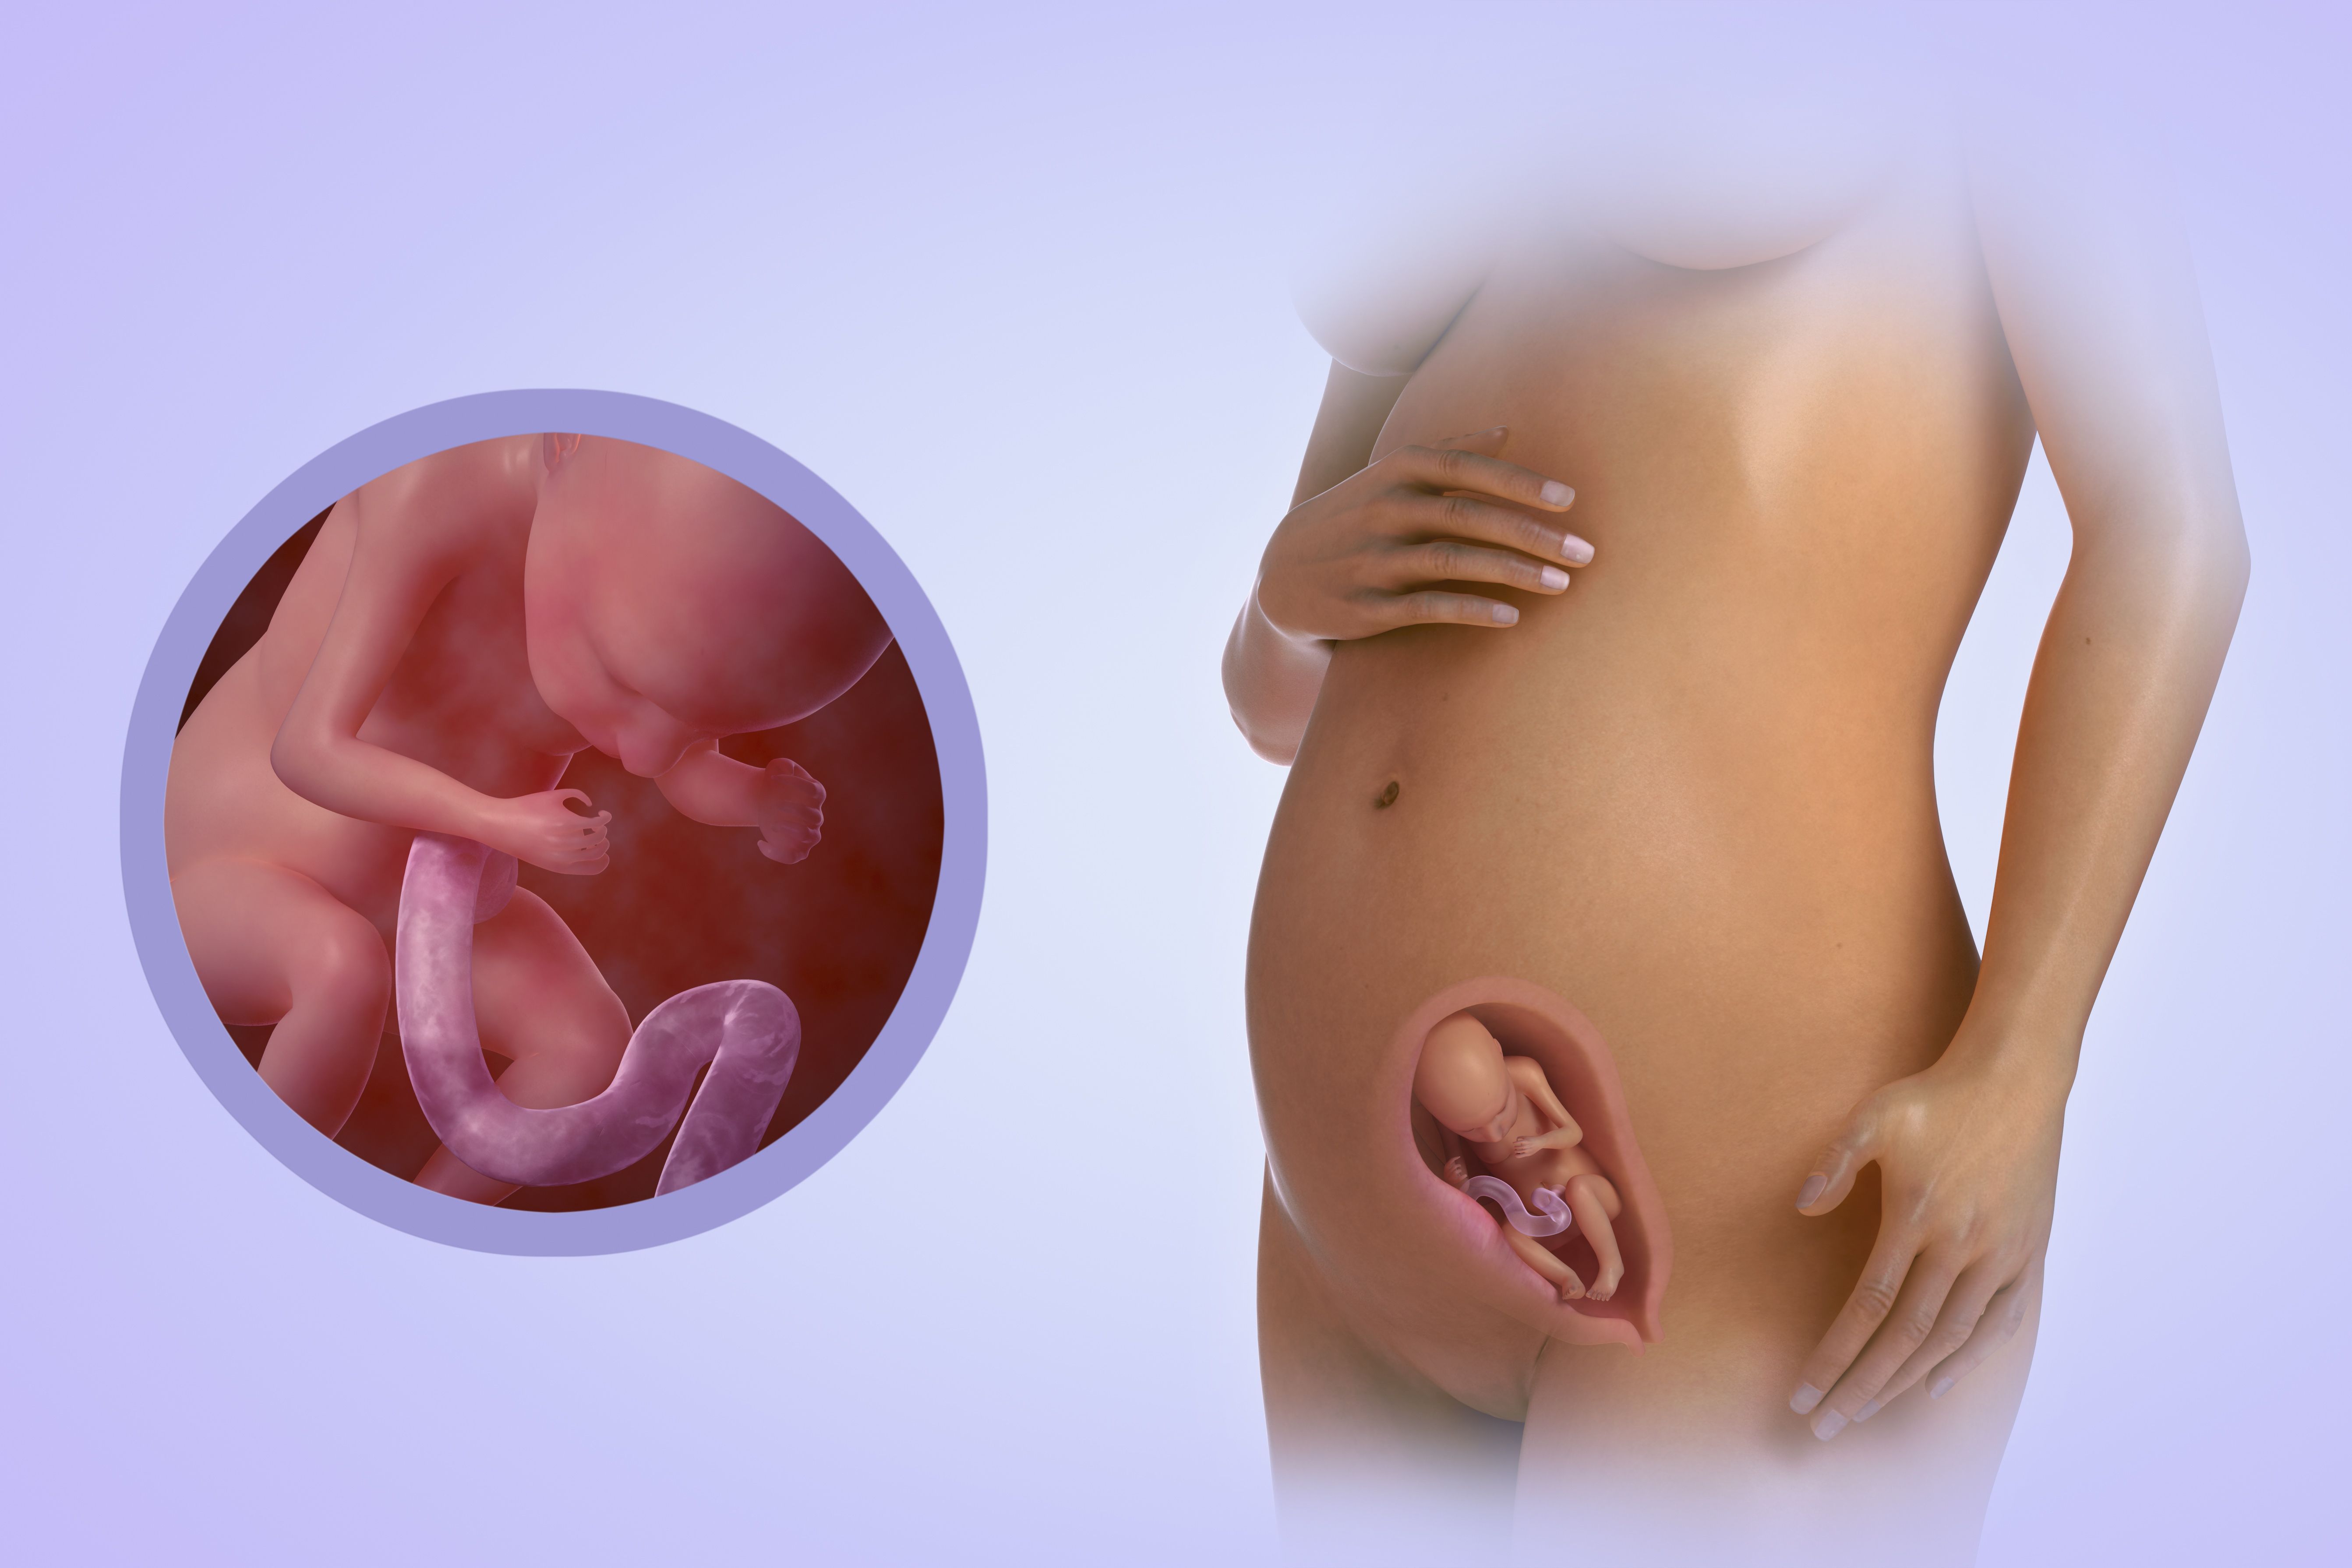 20 неделя беременности - определение пола ребенка, нормы веса, шевеления, упражнения, гигиена, анализы и узи